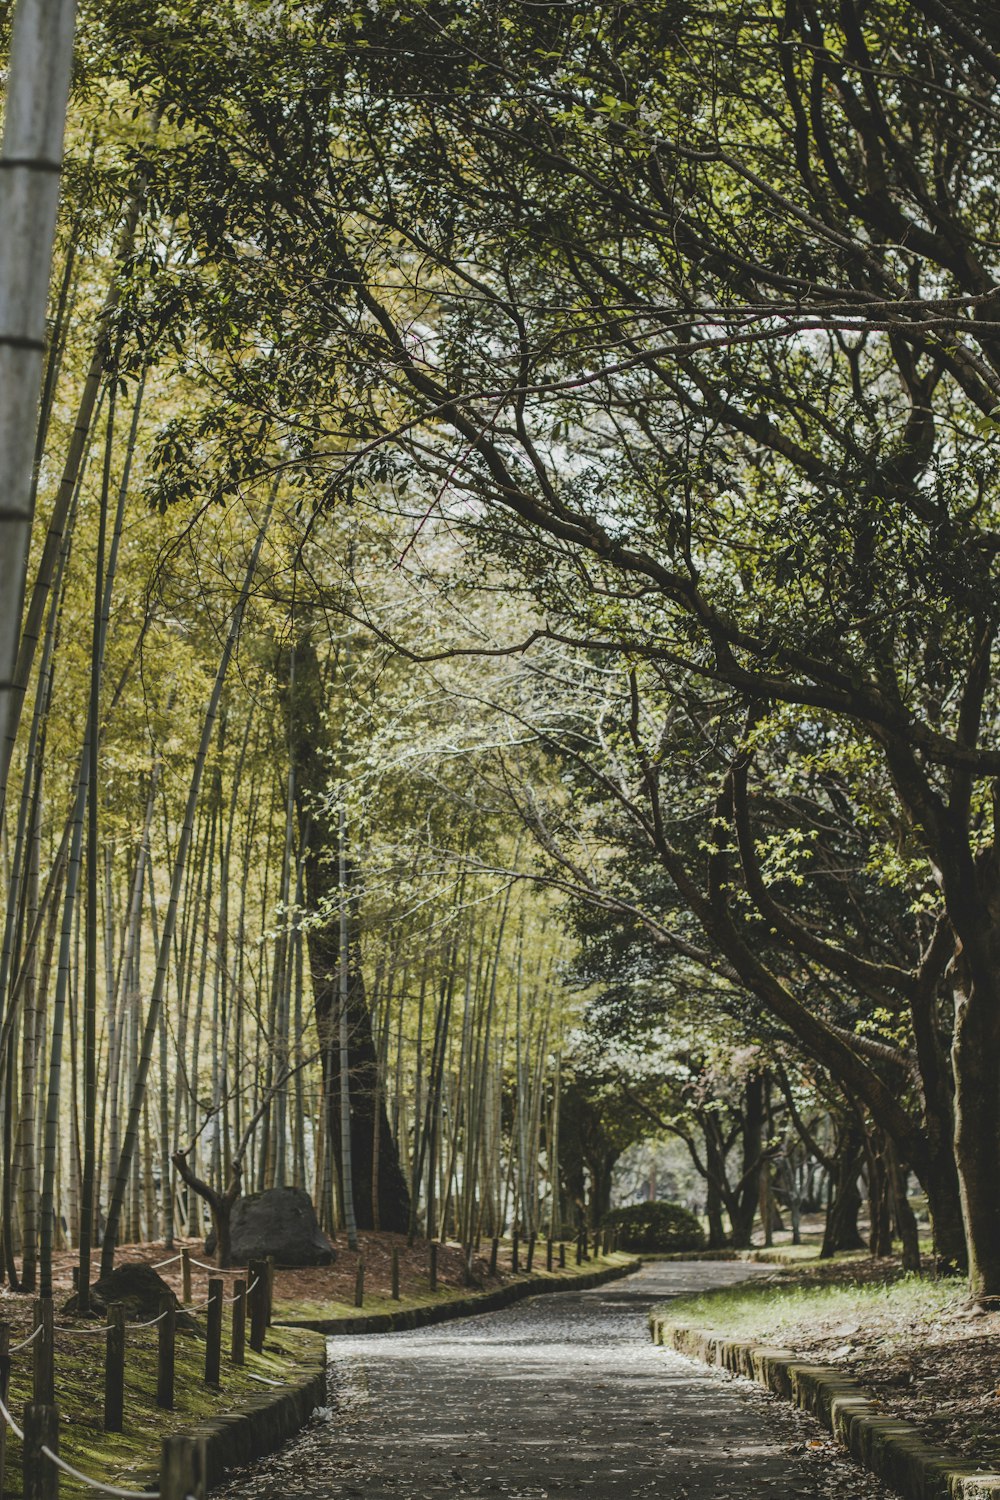 a path through a grove of trees in a park